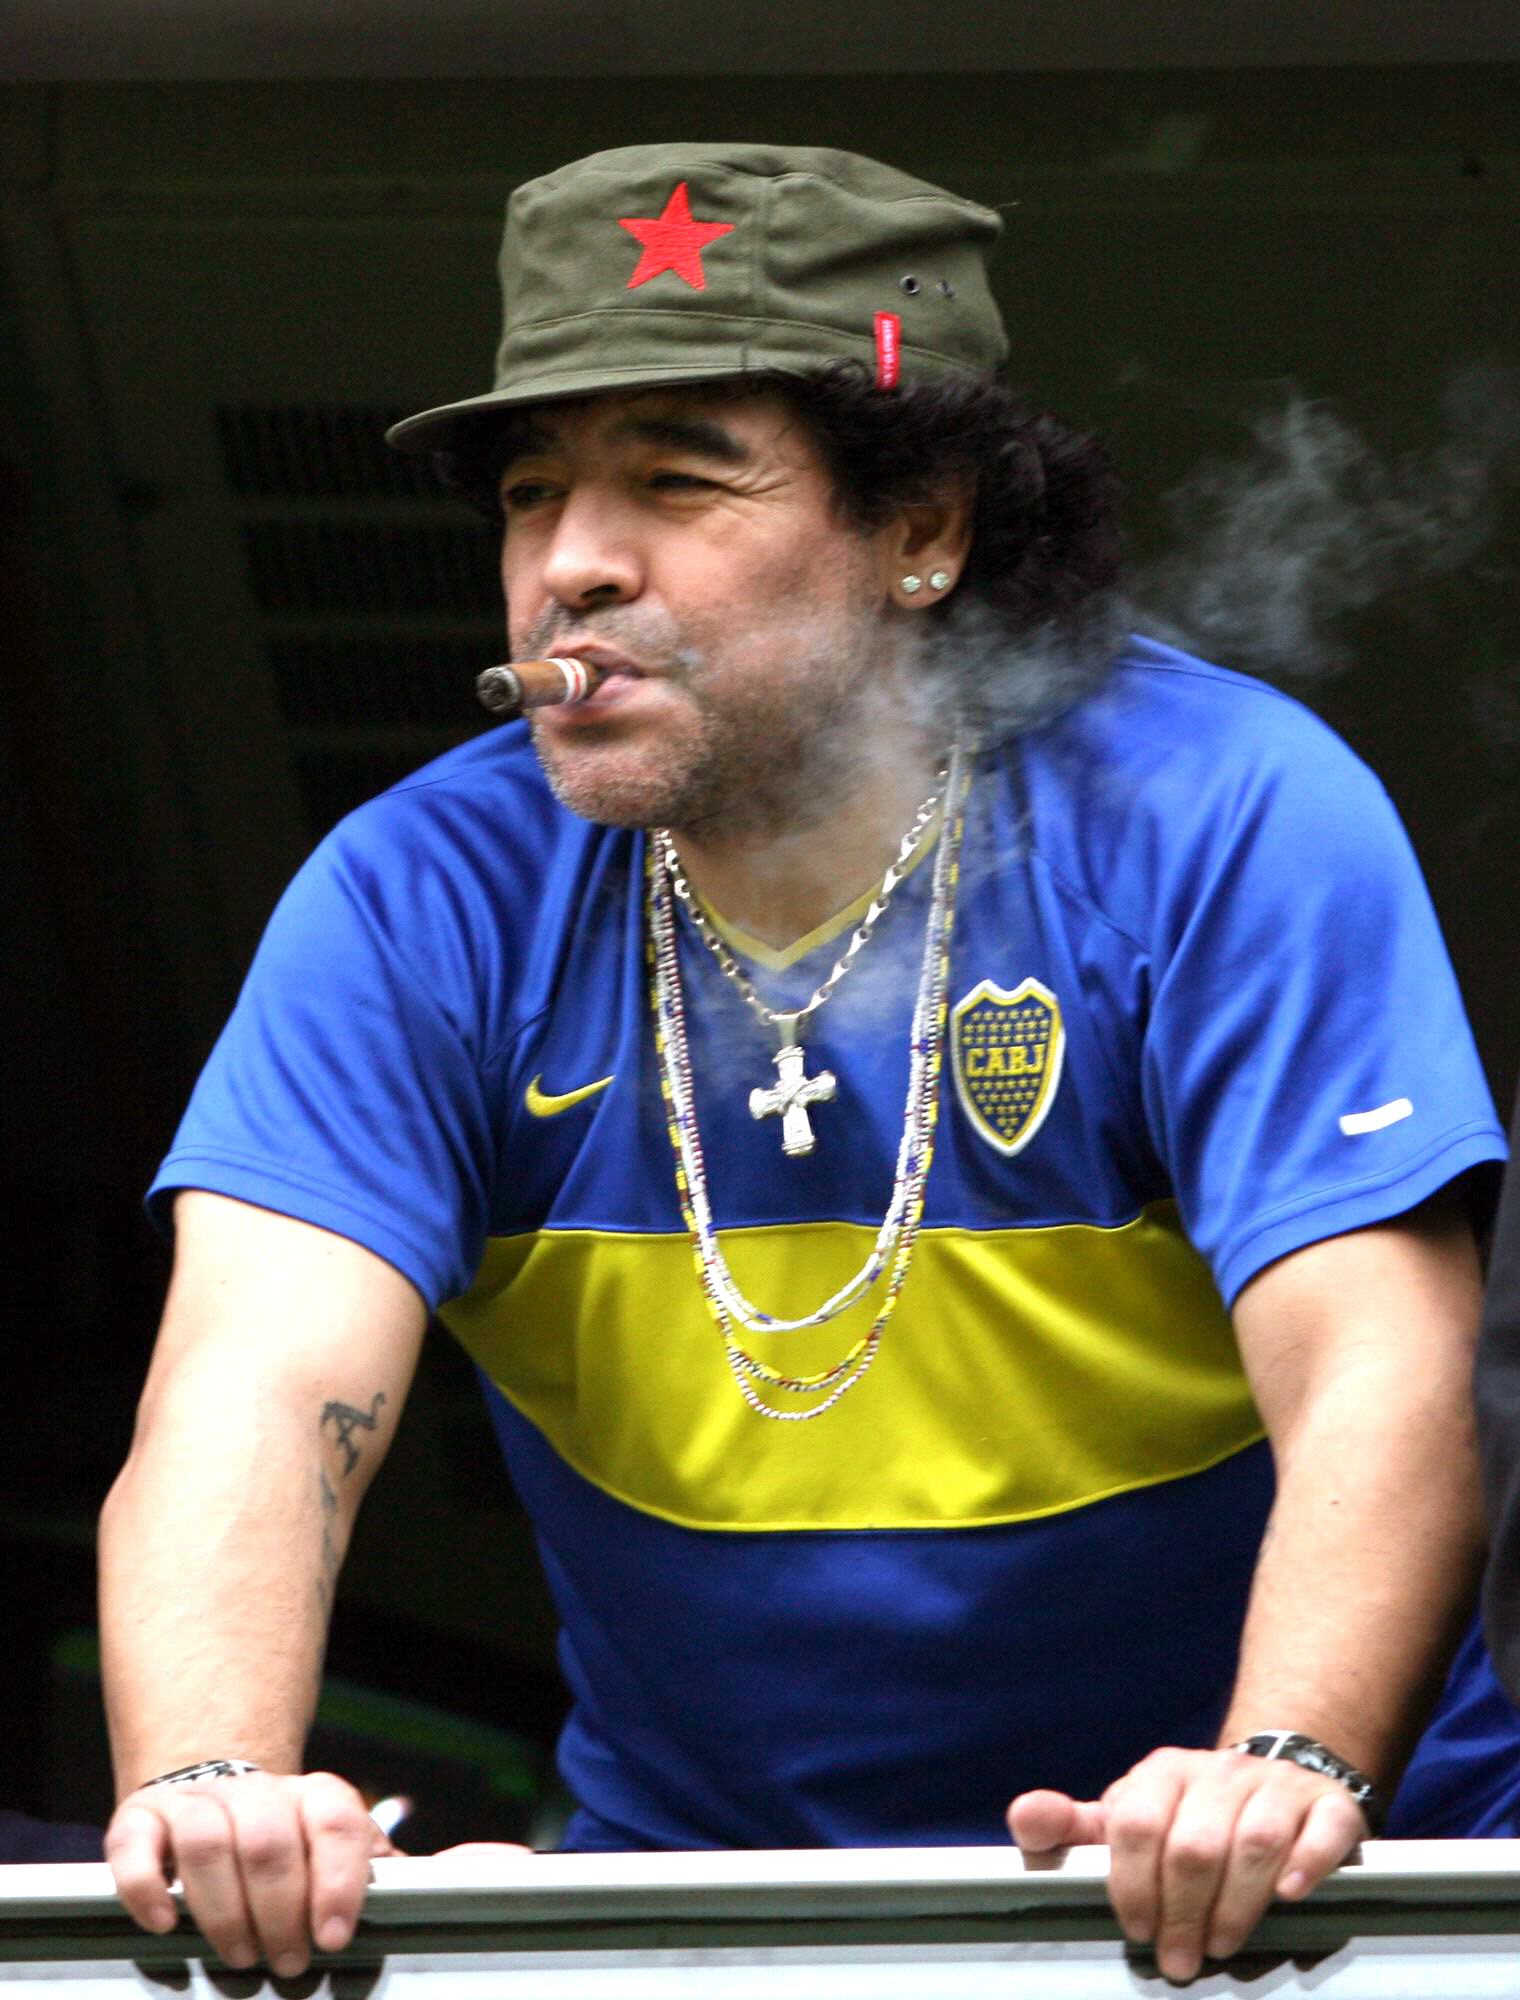 Artistas &amp; Cultura Popular: Artículo sobre Maradona, un gran artista